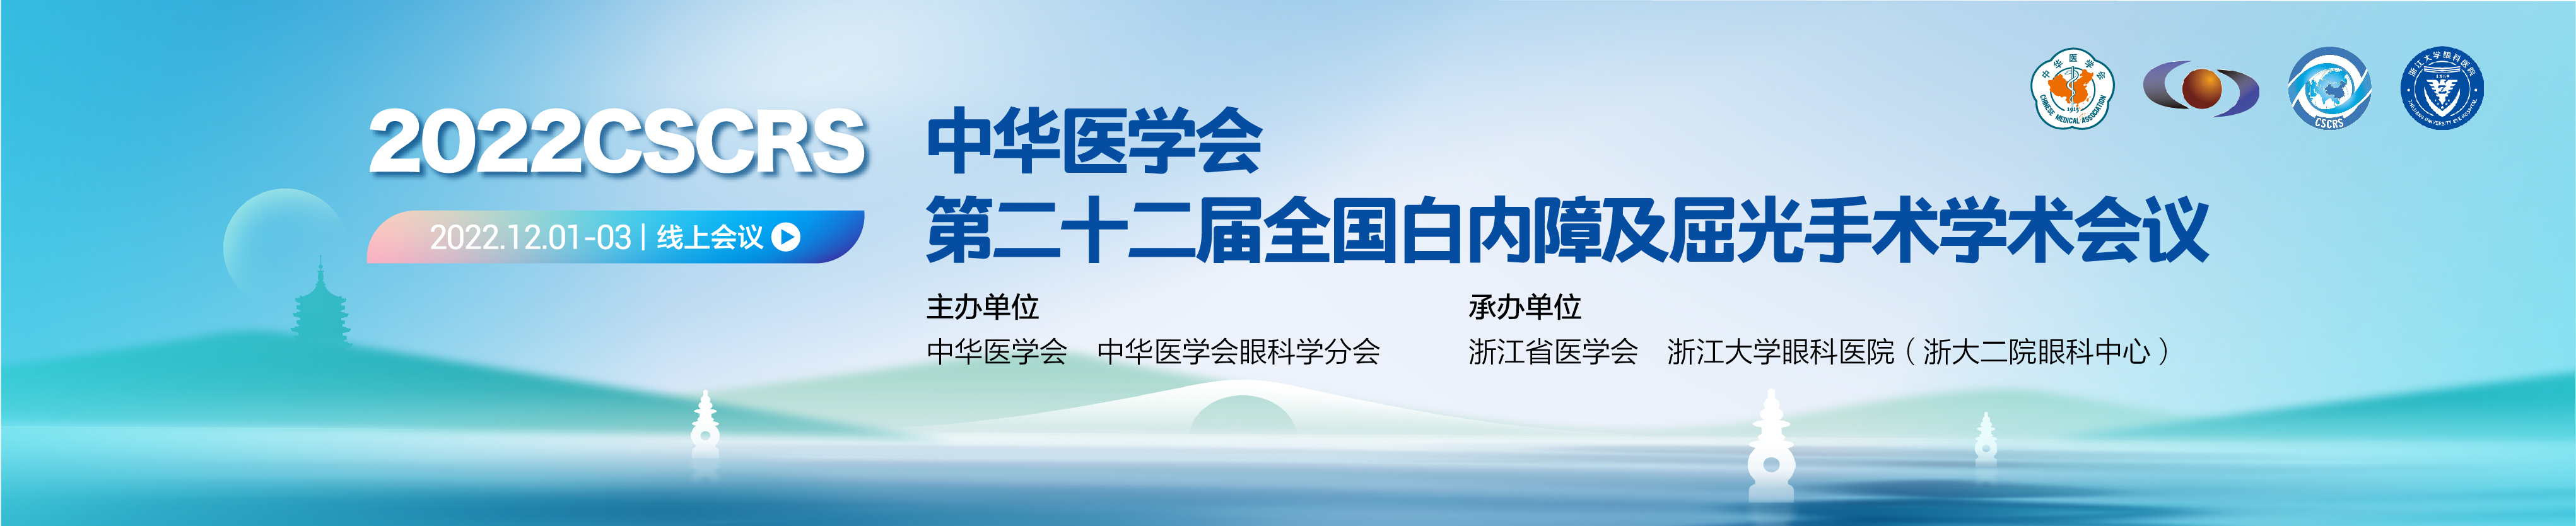 中华医学会第二十二届全国白内障及屈光手术学术会议